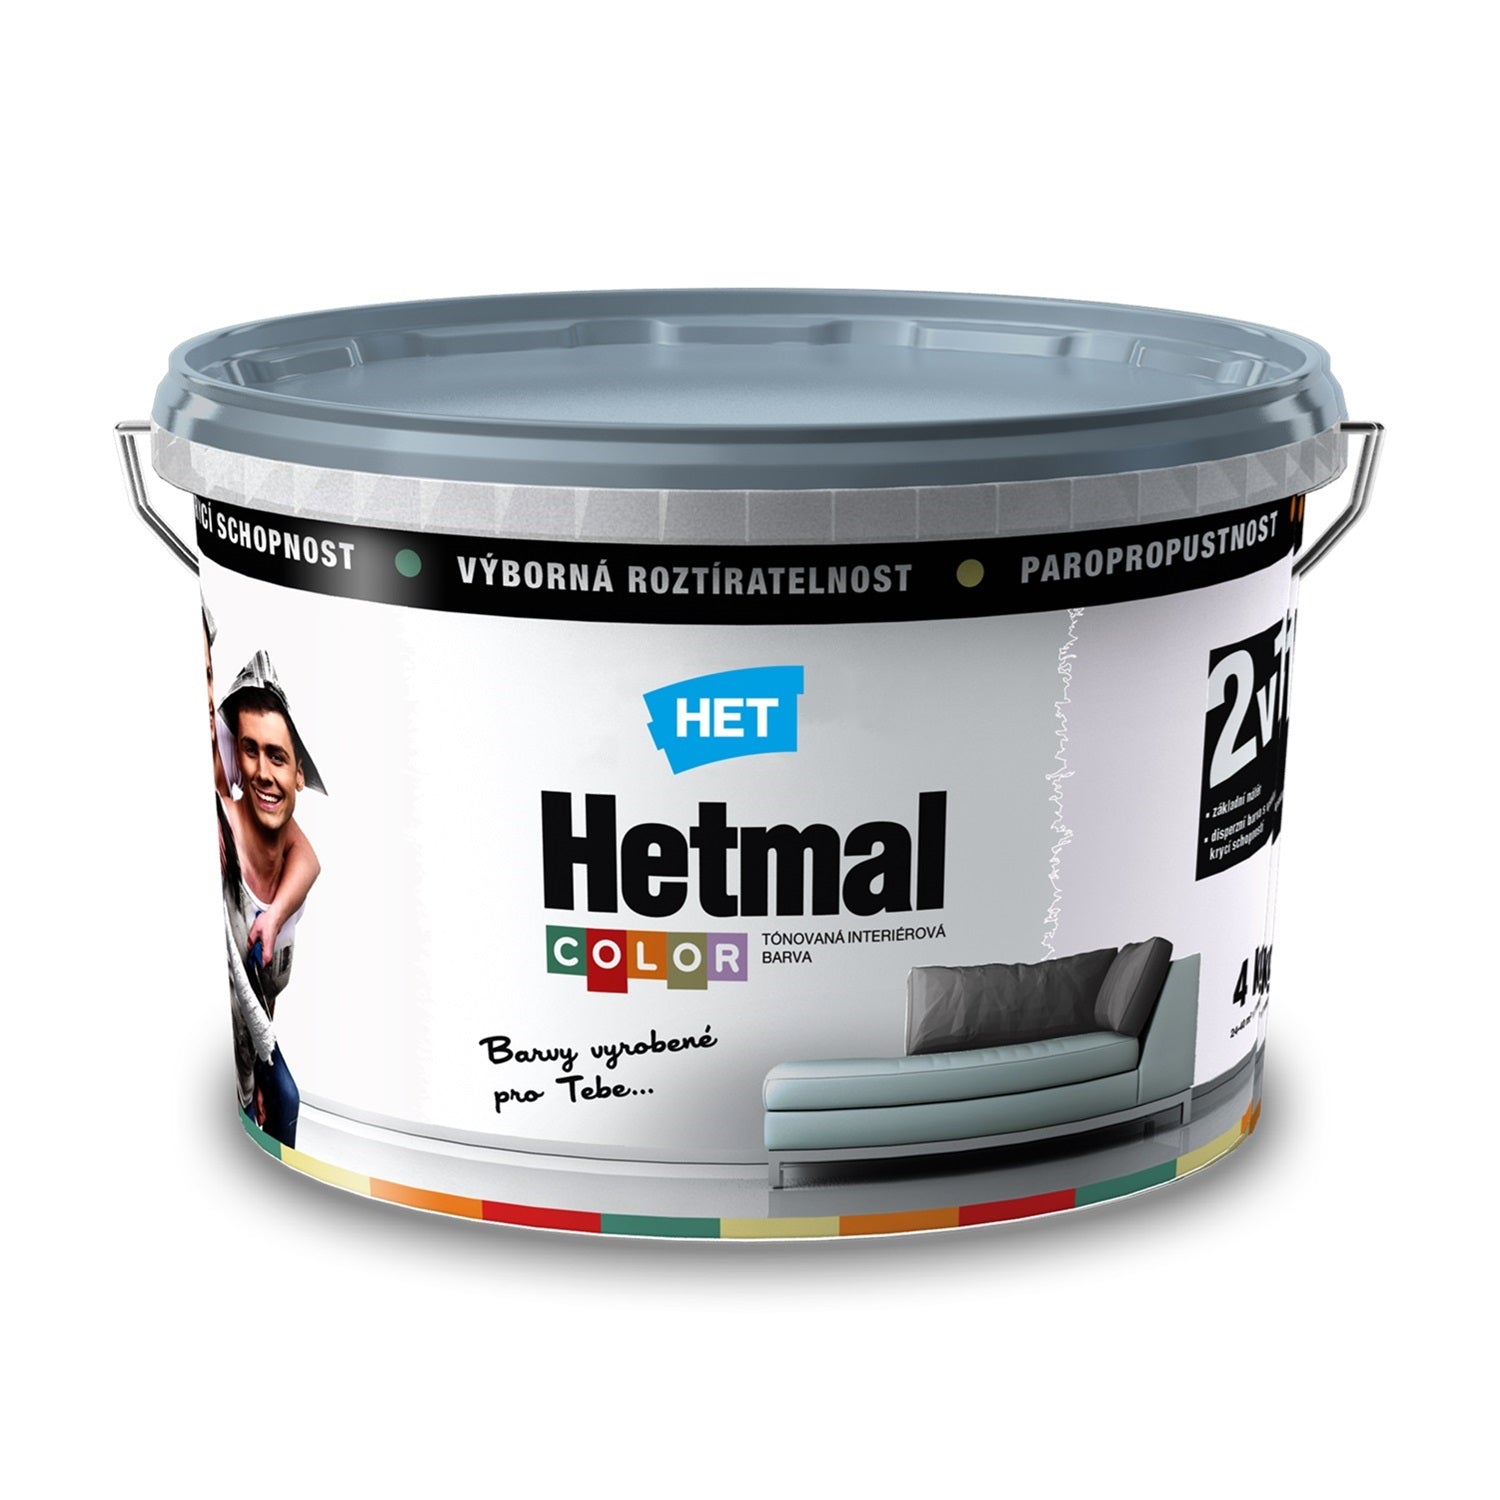 HET HETMAL COLOR Tónovaná interiérová akrylátová oteruvzdorná farba HL 0103 - smotanová Ema 4 kg